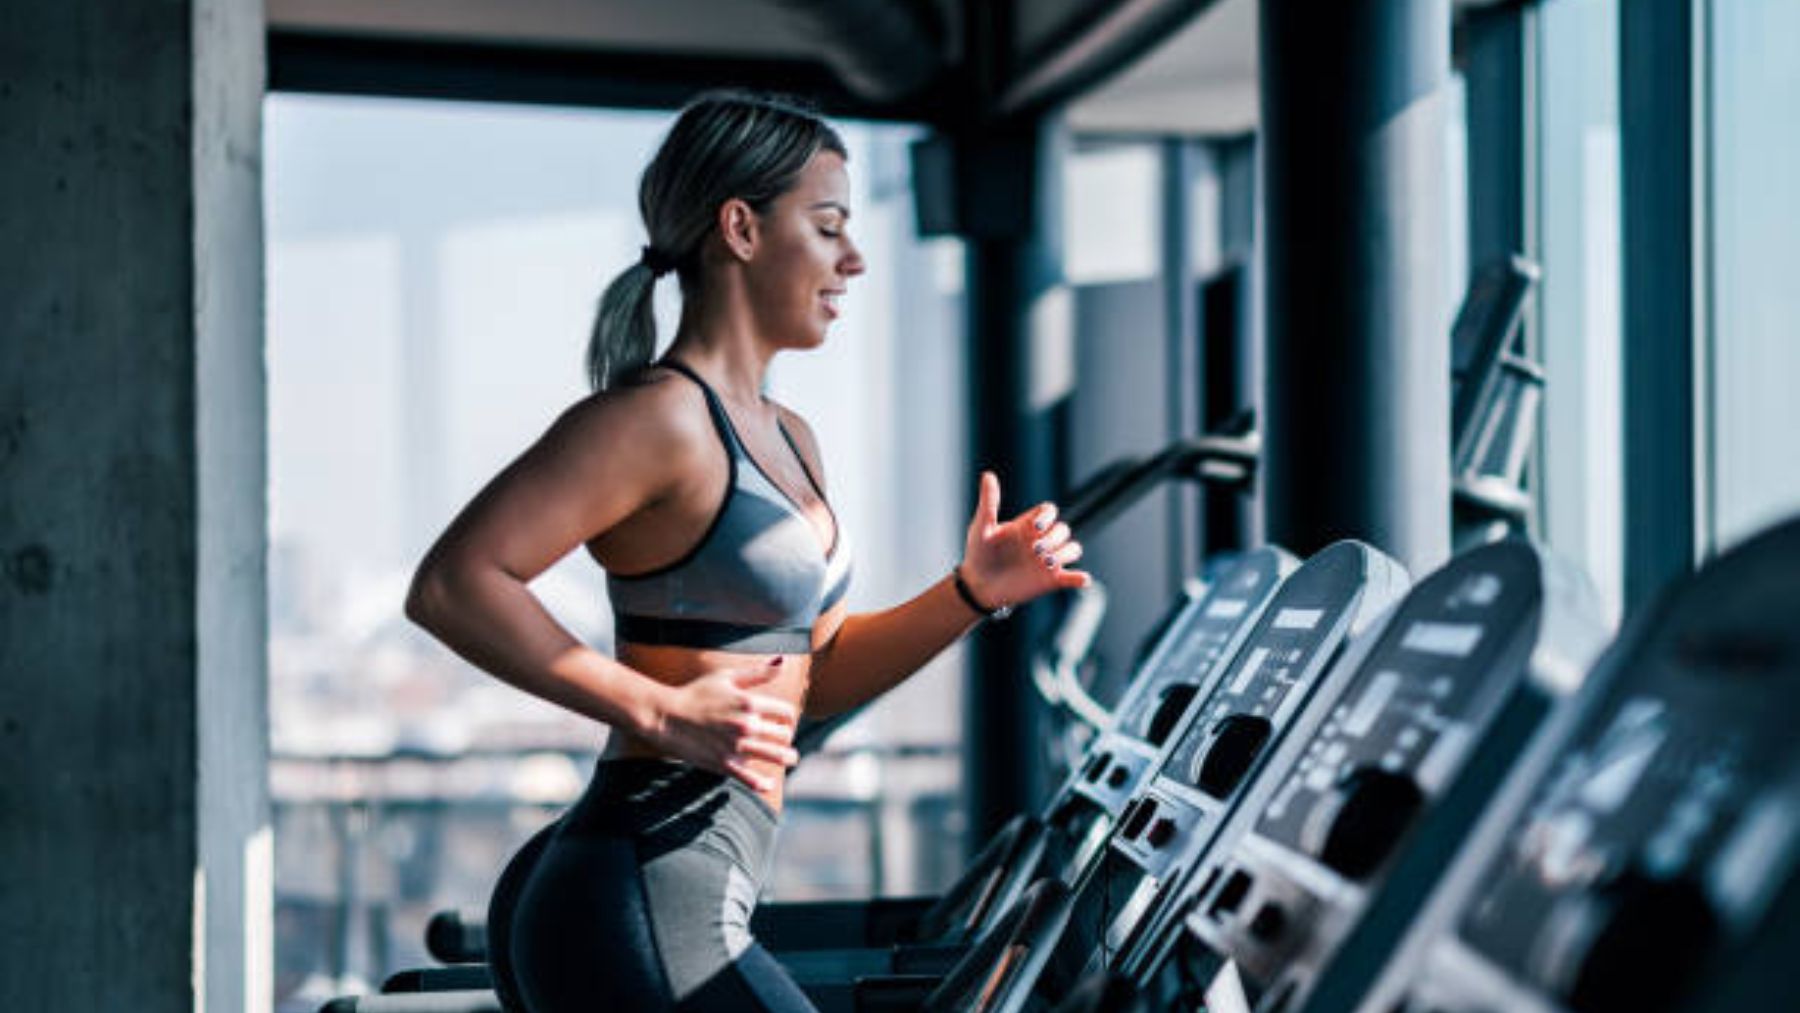 Máquinas del gimnasio para perder calorías y tonificar - Mejor con Salud